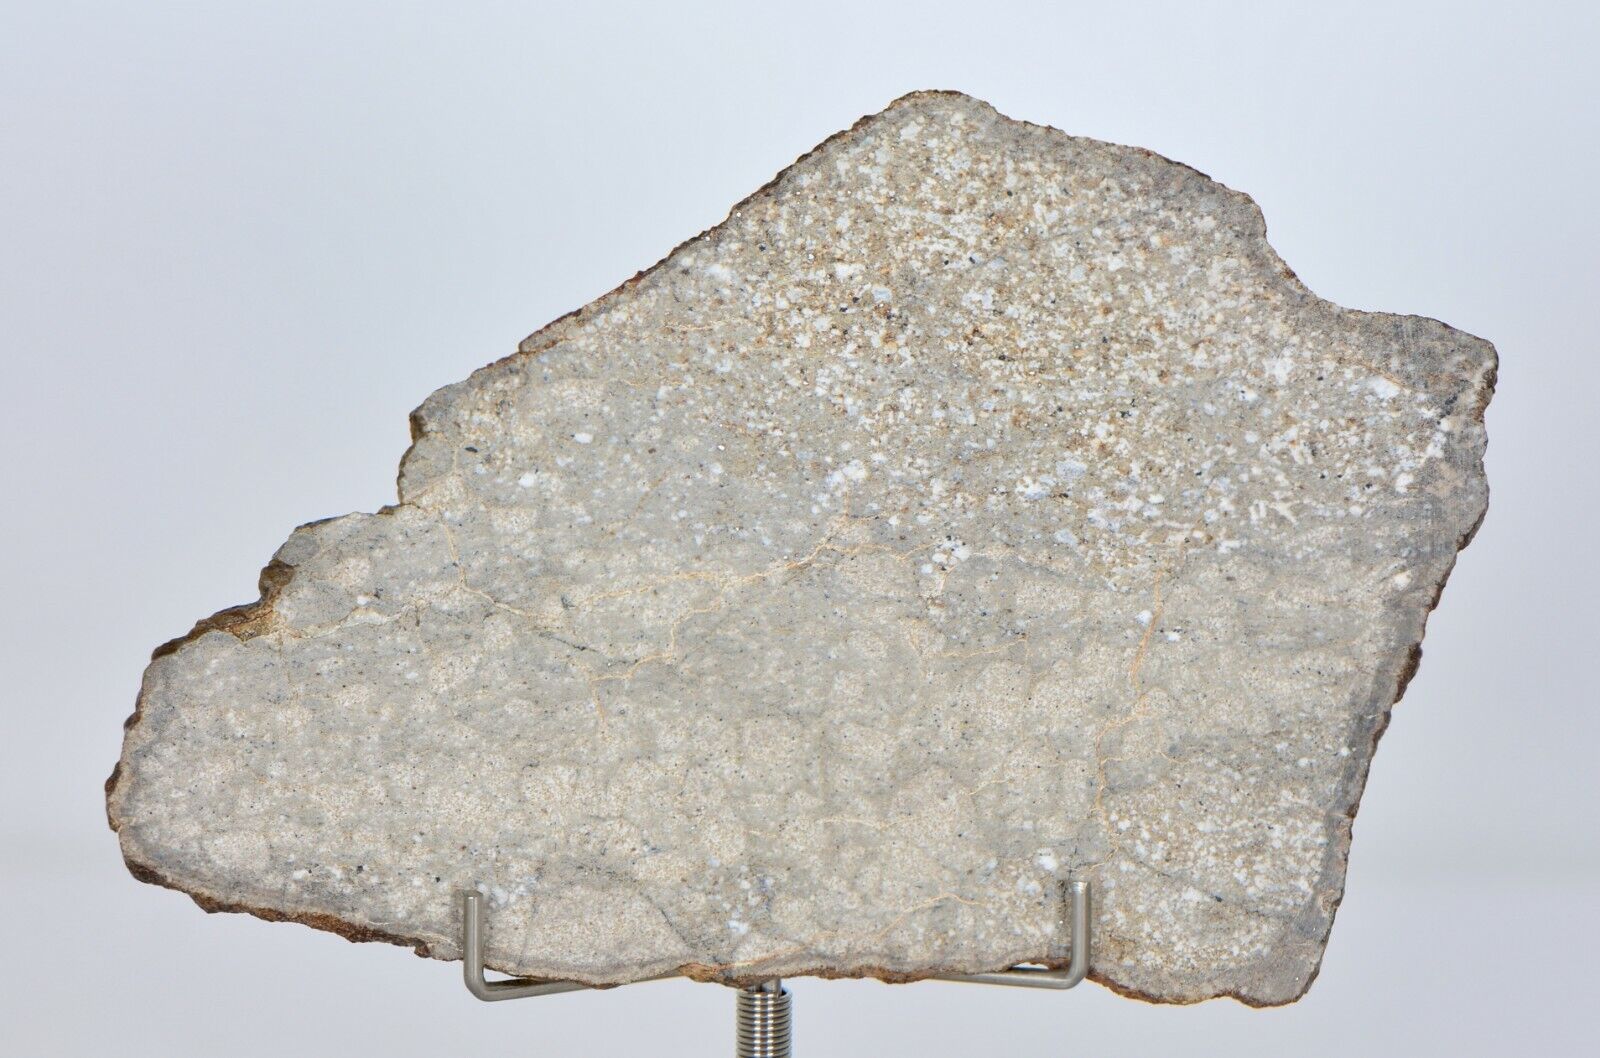 24.4g Ungrouped Achondrite Meteorite Beautiful Slice - NWA 12338 I TOP